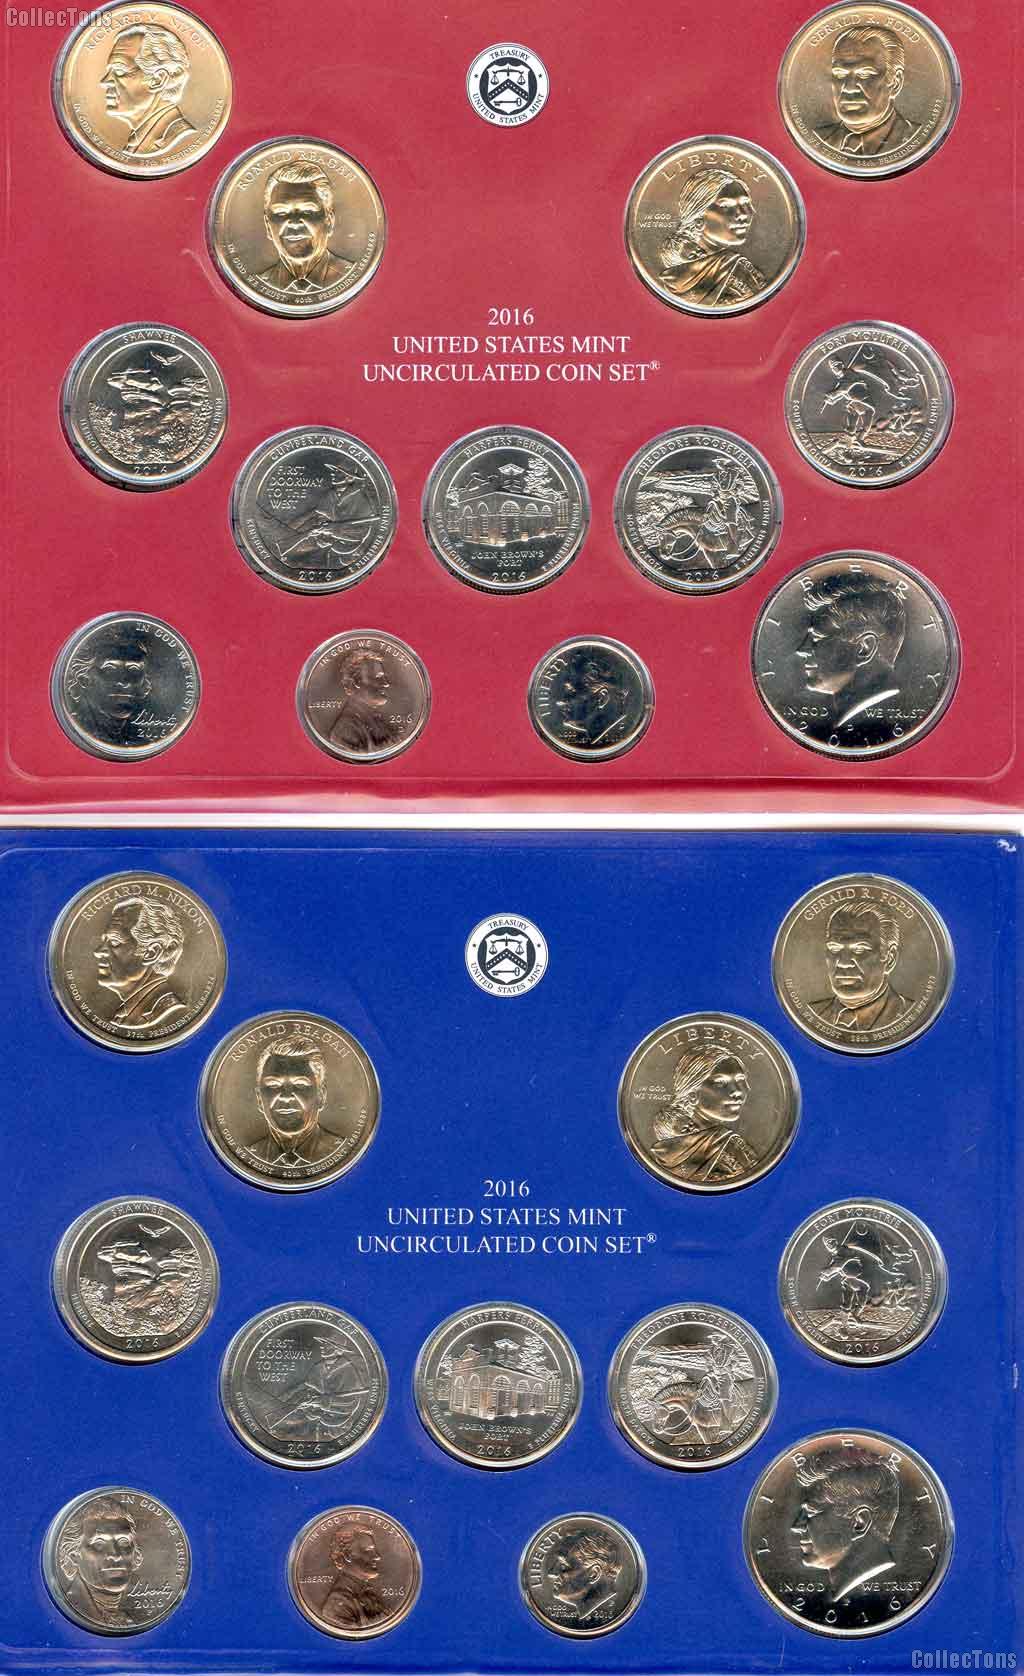 2016 Mint Set - All Original 26 Coin U.S. Mint Uncirculated Set